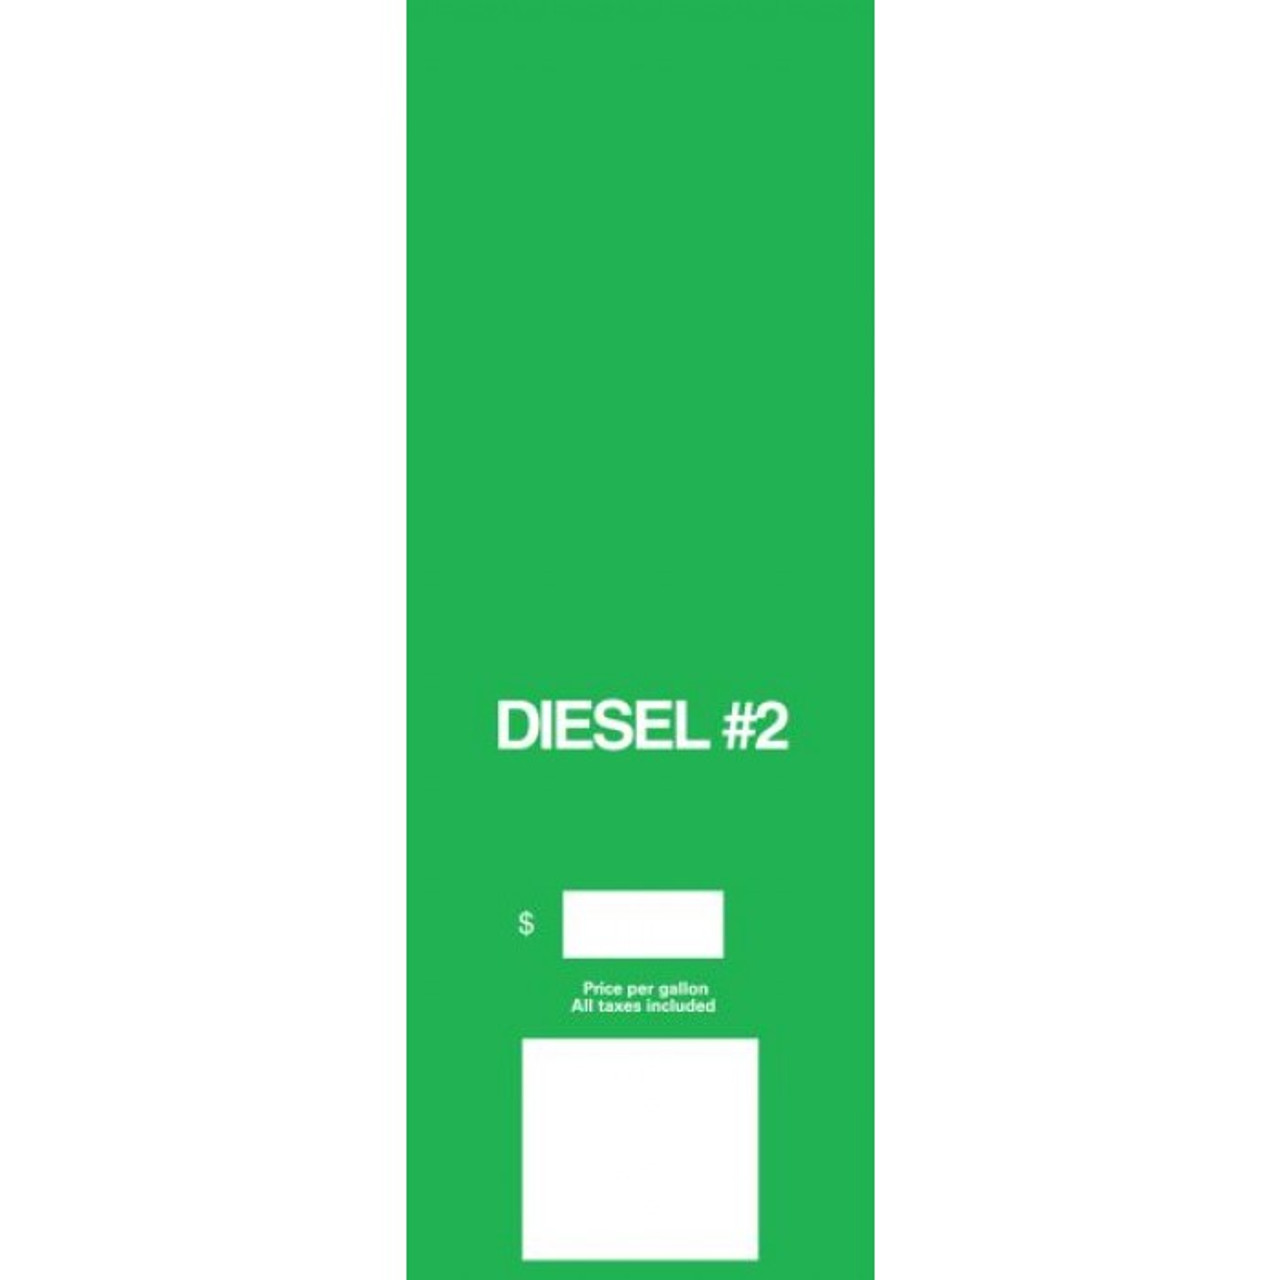 EN09002G053 - Offset Cim Left Brand Panel Diesel #2 Standard